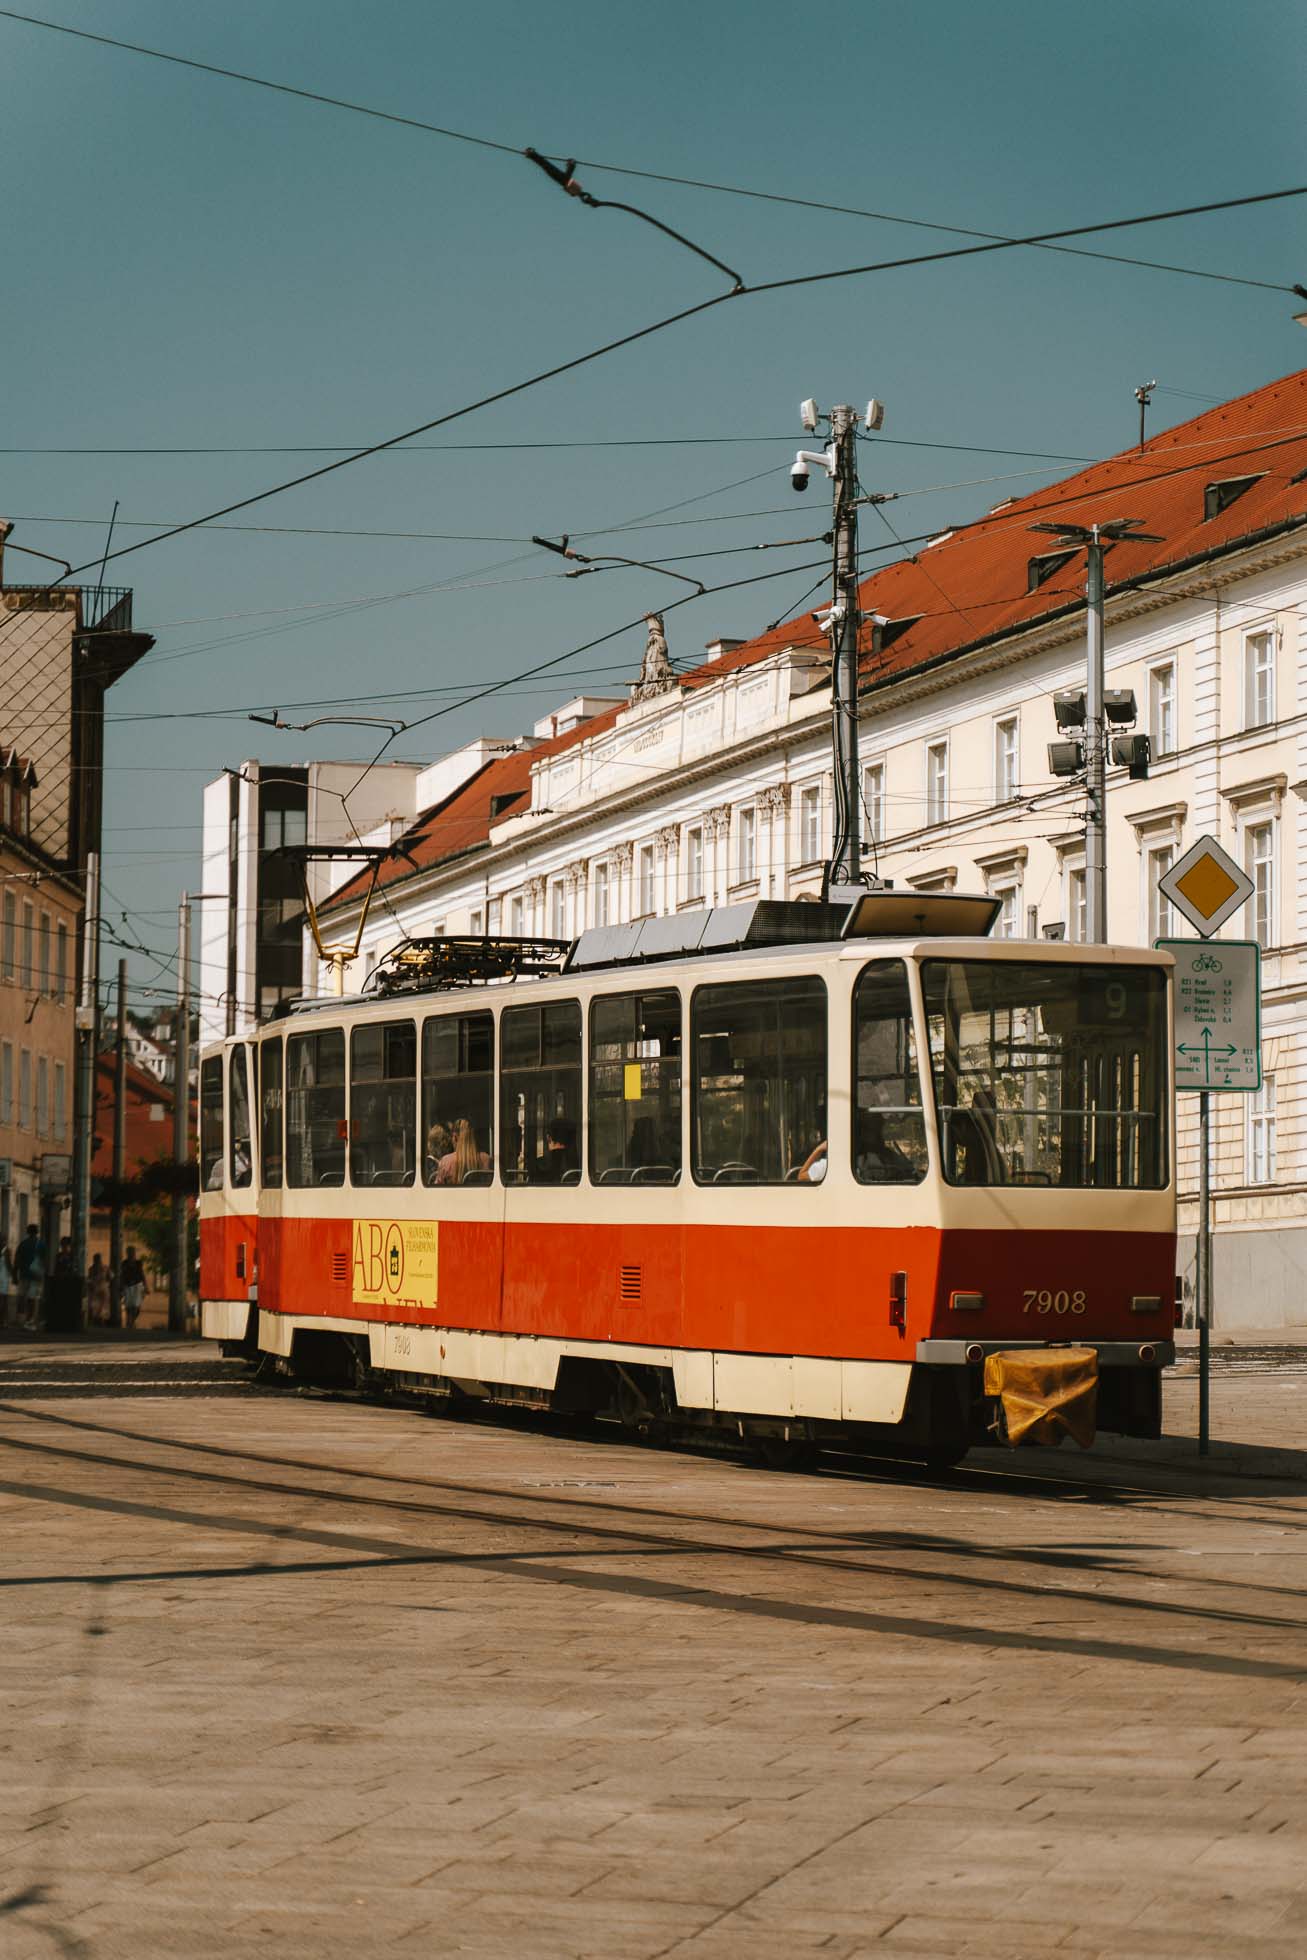 Transporte público, una manera de visitar Bratislava en 1 día